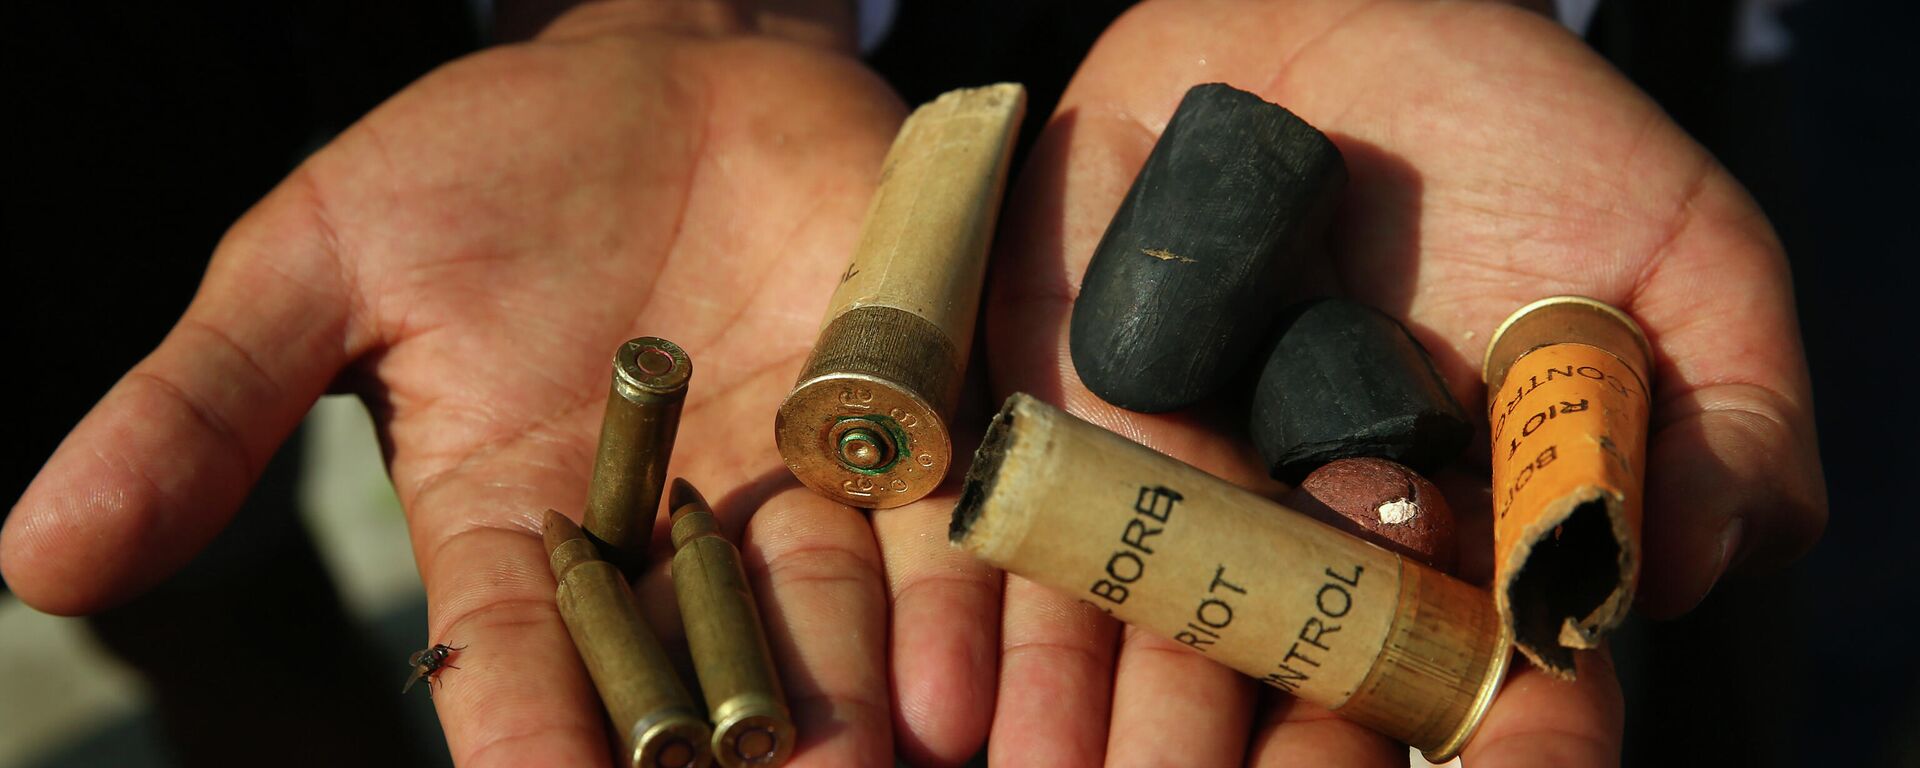 Las municiones que usaron las fuerzas de seguridad contra los manifestantes en Birmania - Sputnik Mundo, 1920, 28.02.2021